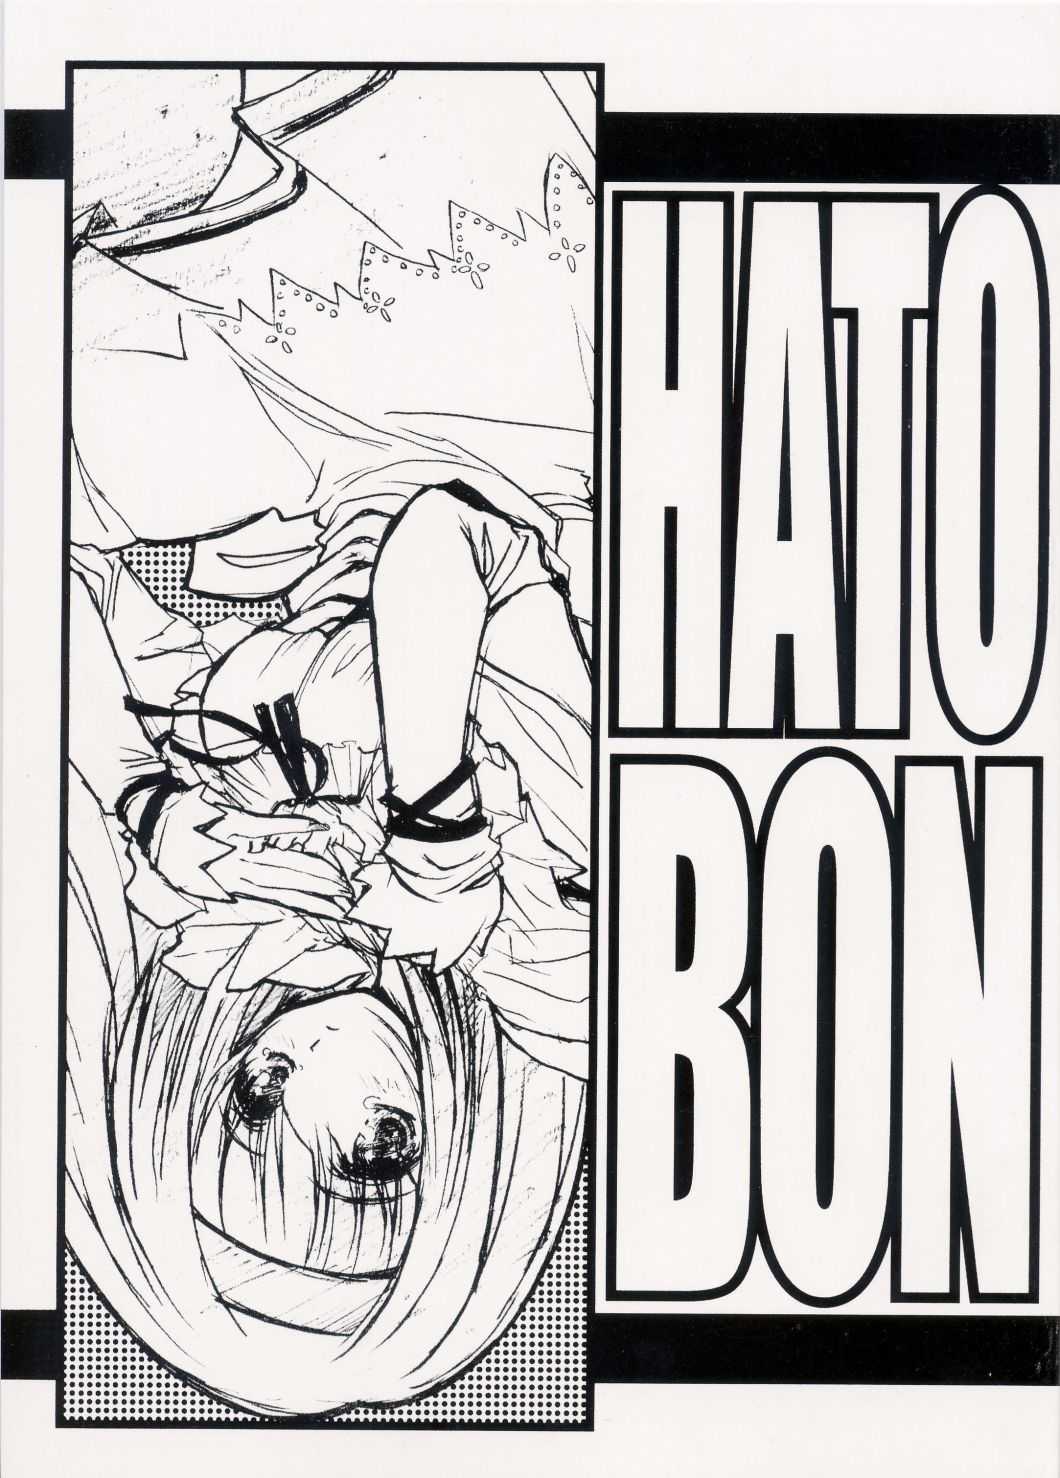 (Heartfull Communication)[Tange Kentou Club] HATOBON (ハートフルコミュニケーション)[丹下拳闘倶楽部] HATOBON